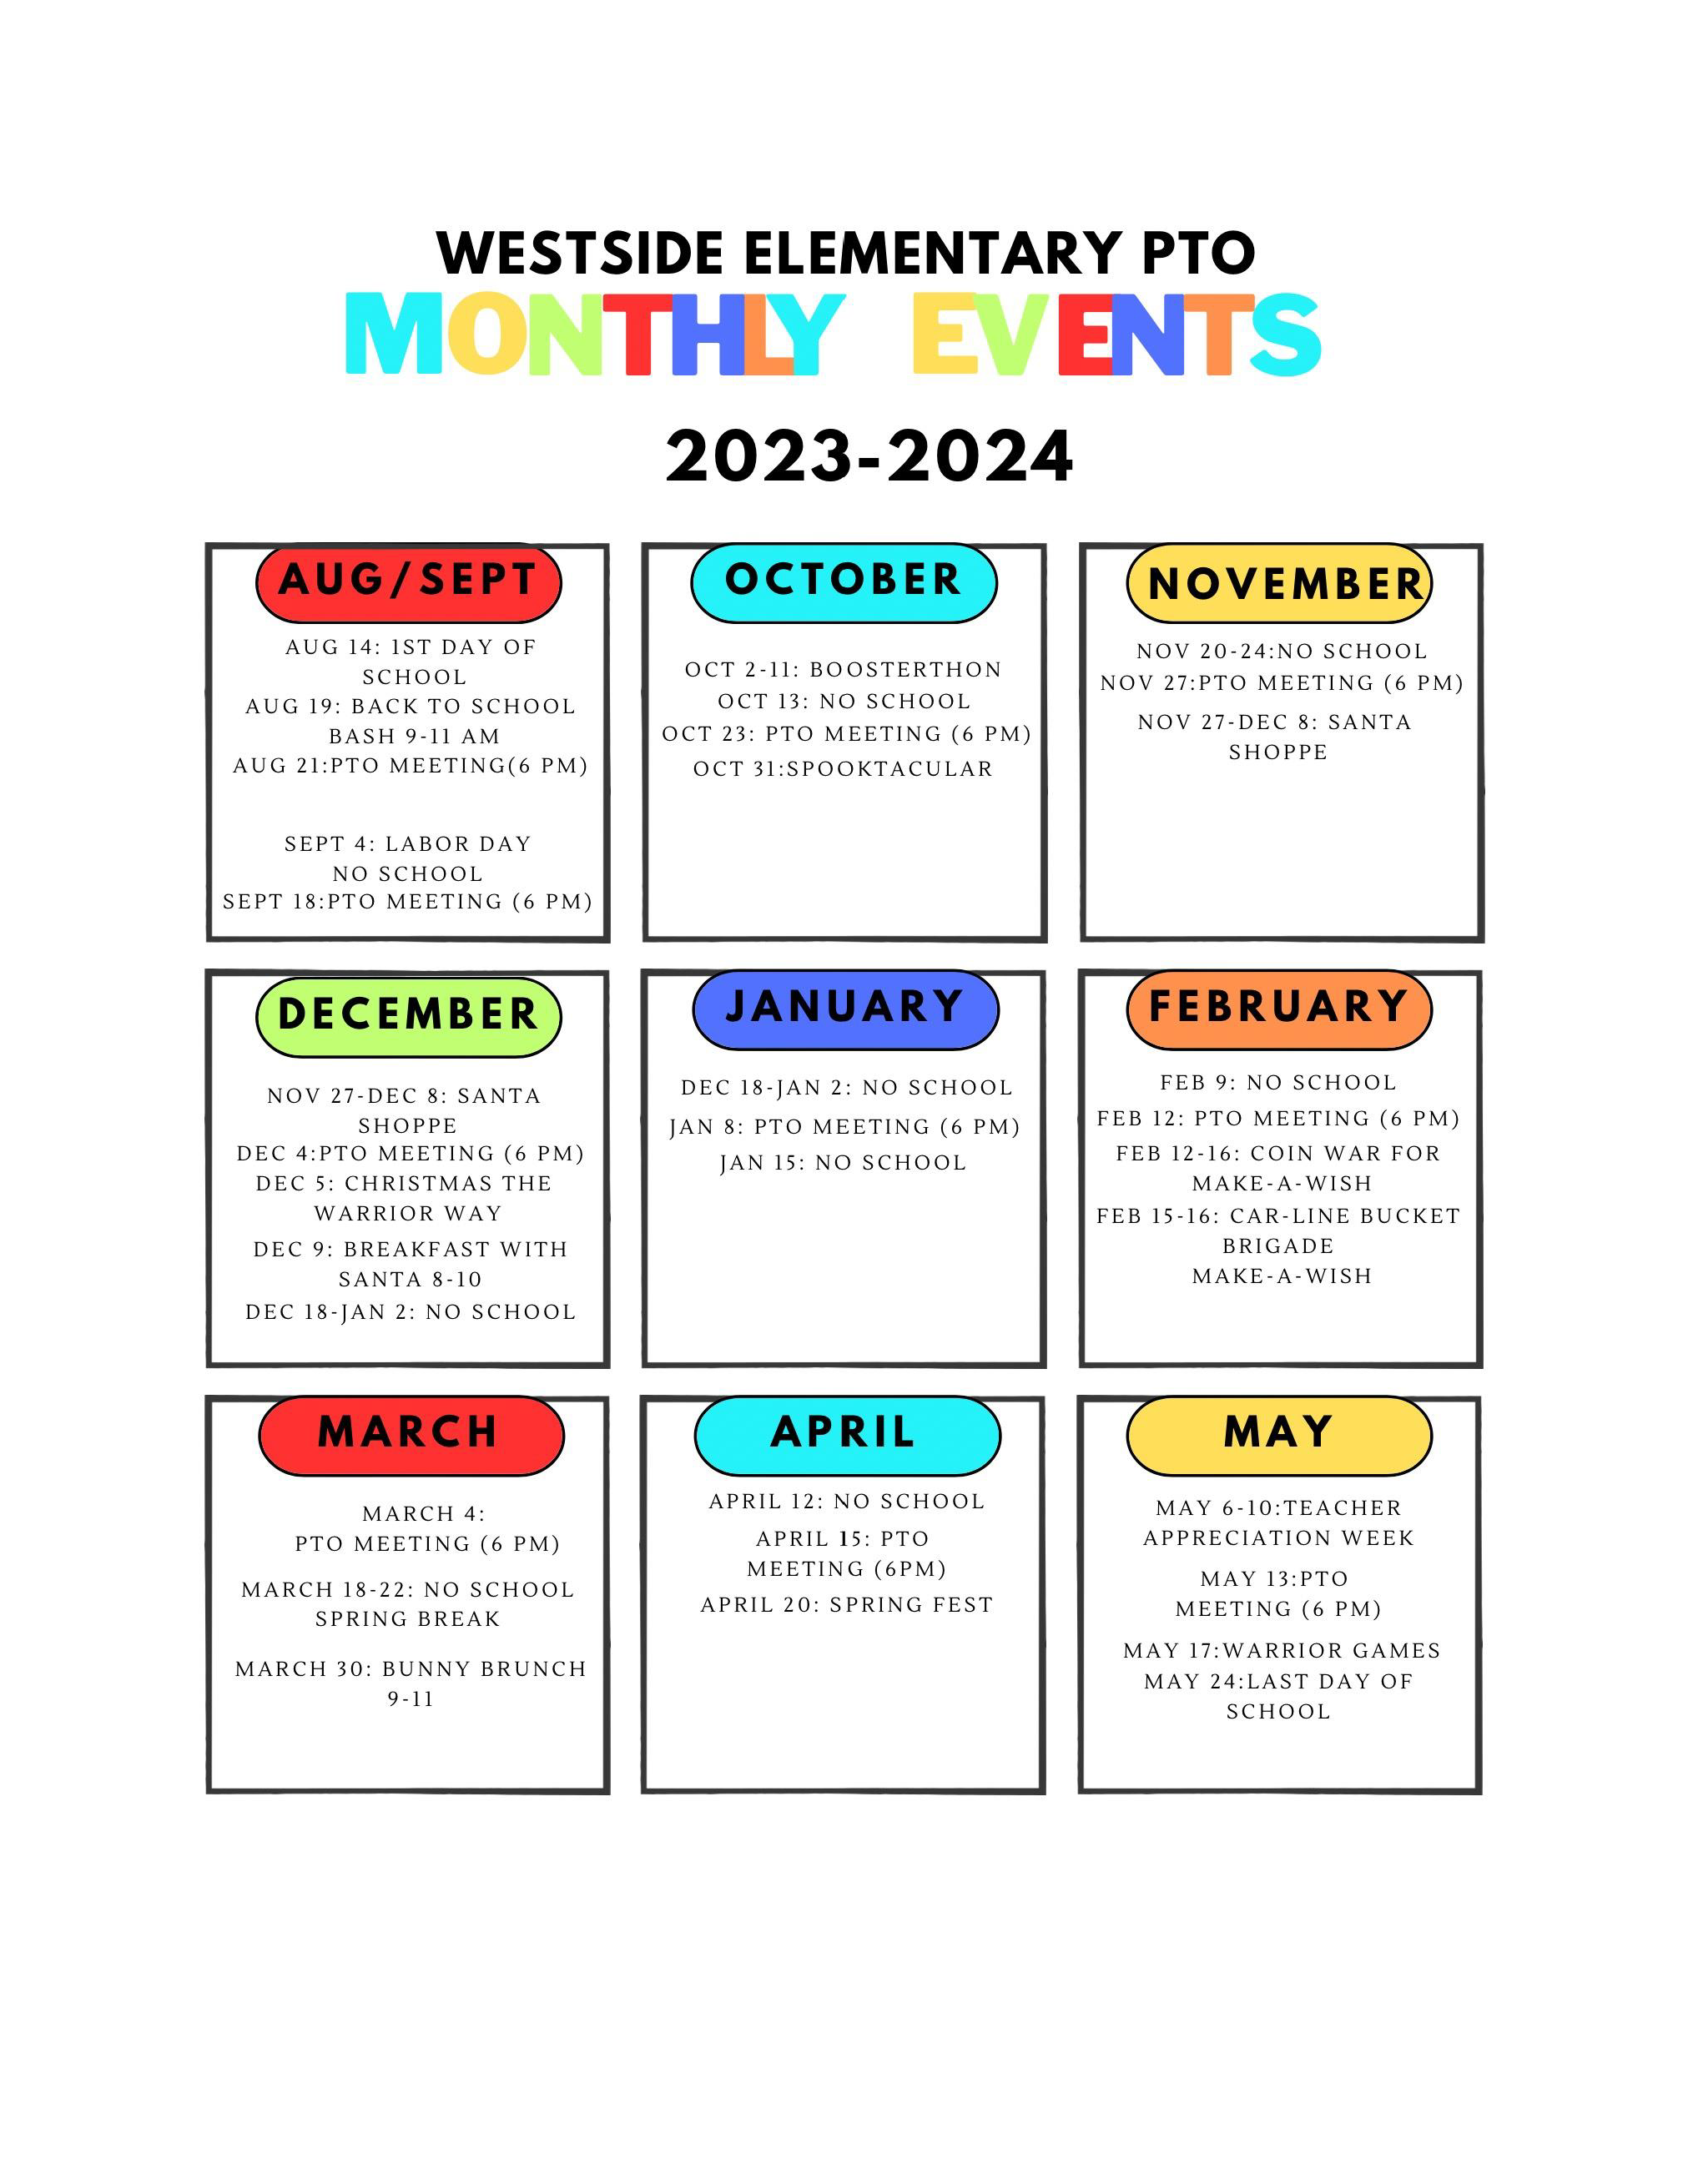 WES PTO Events Calendar for 2023-2024